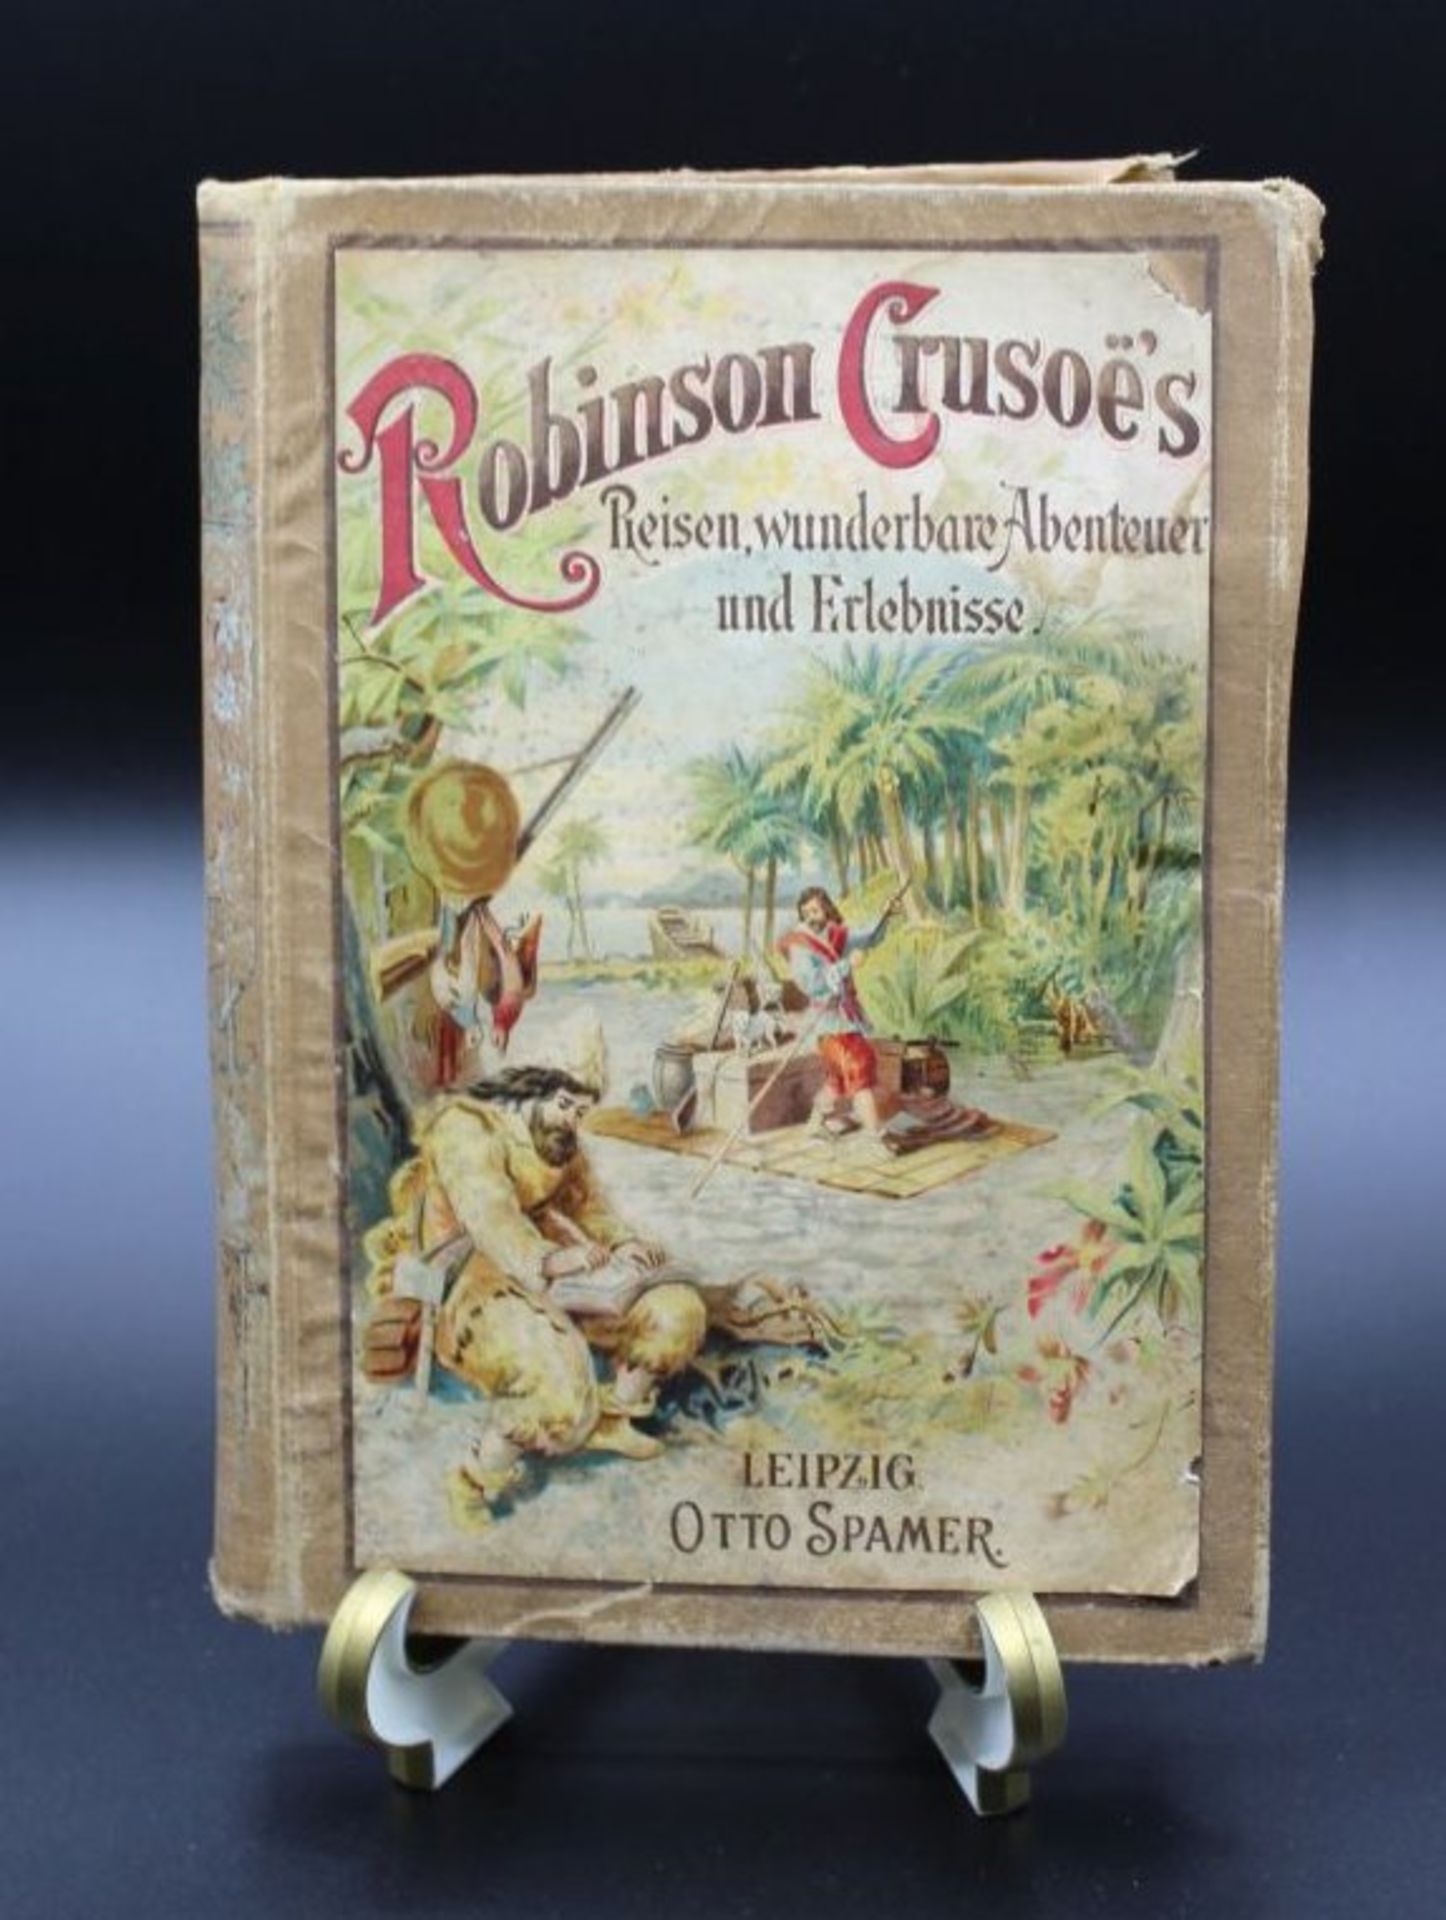 Robinson Crusoes Reisen, wunderbare Abenteuer und Erlebnisse, Daniel de Foe, Leipzig 1904, starke